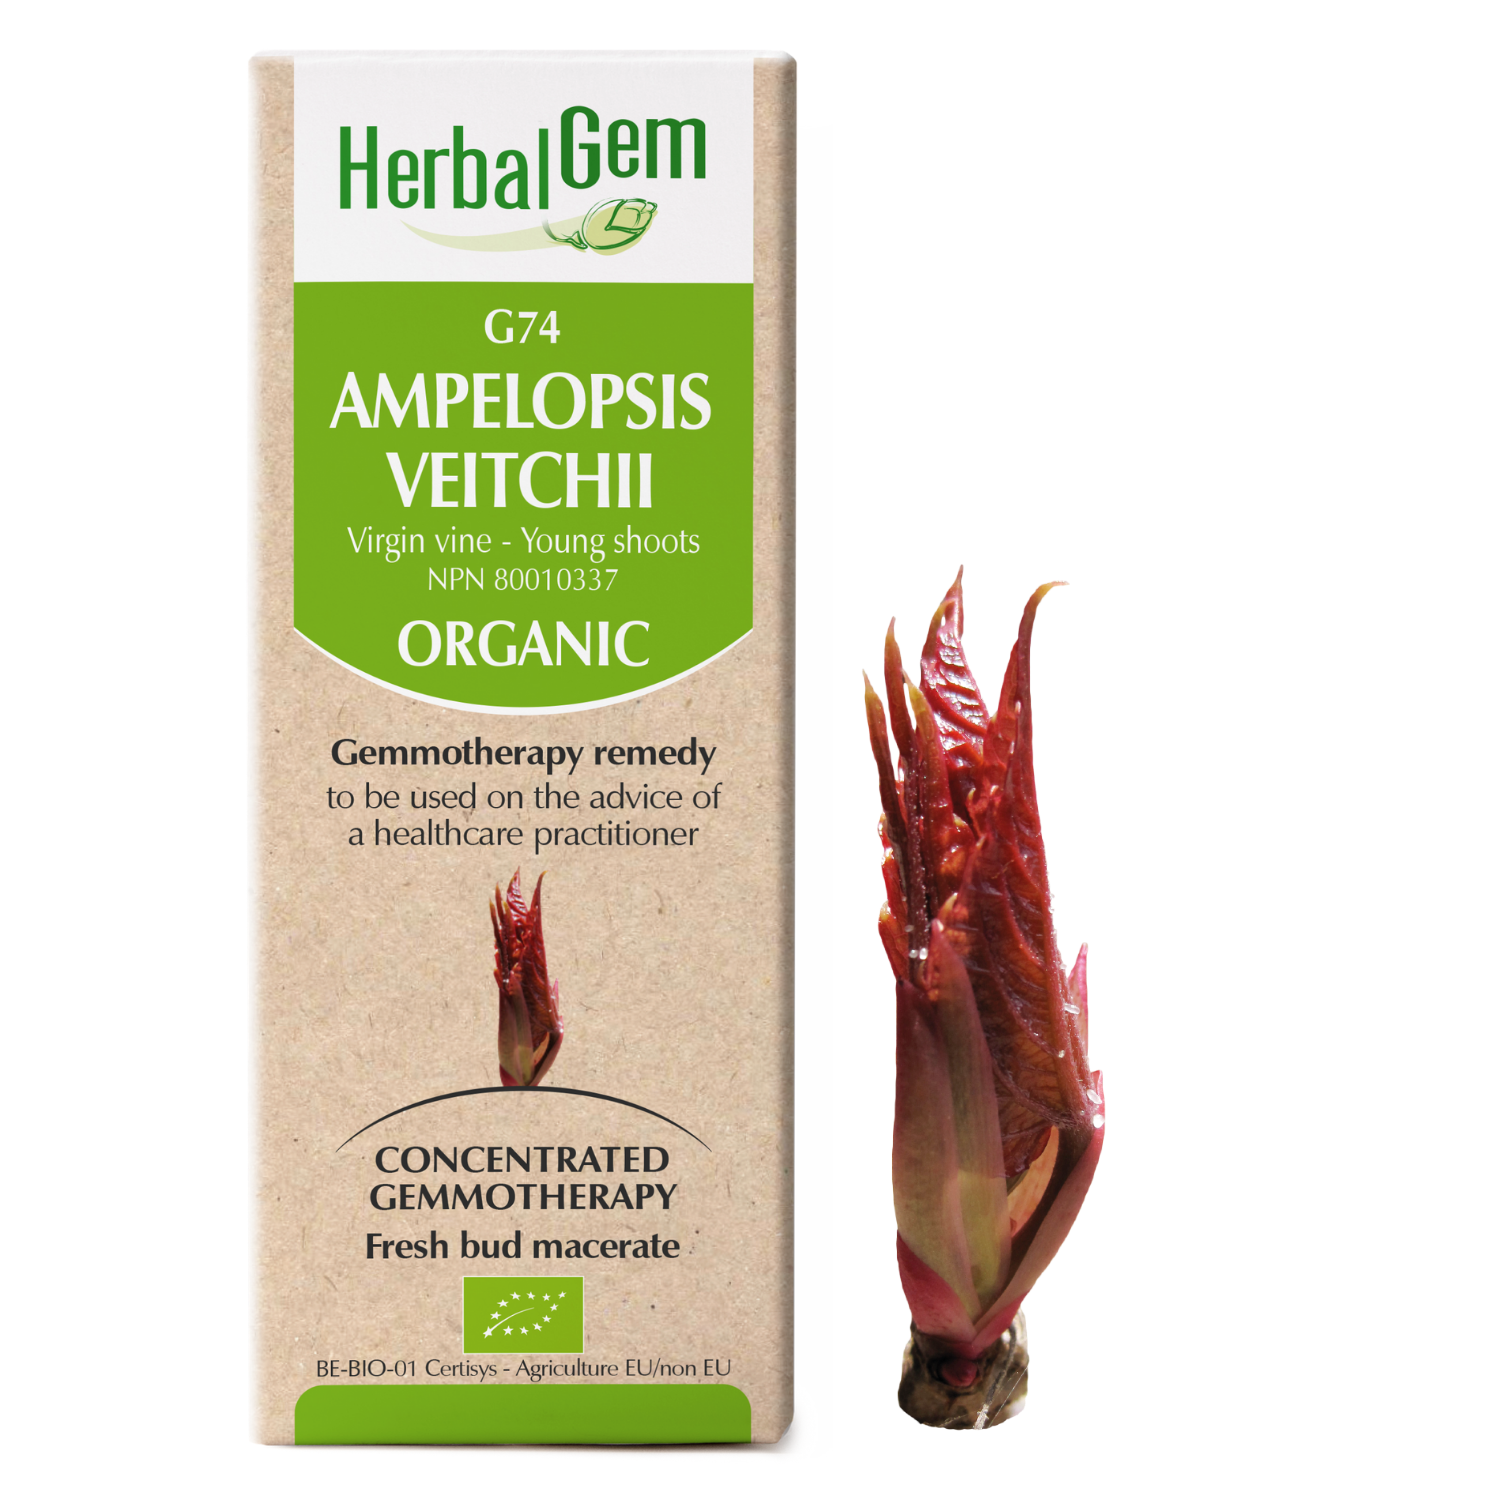 Ampelopsis veitchii (Vigne vierge) G74